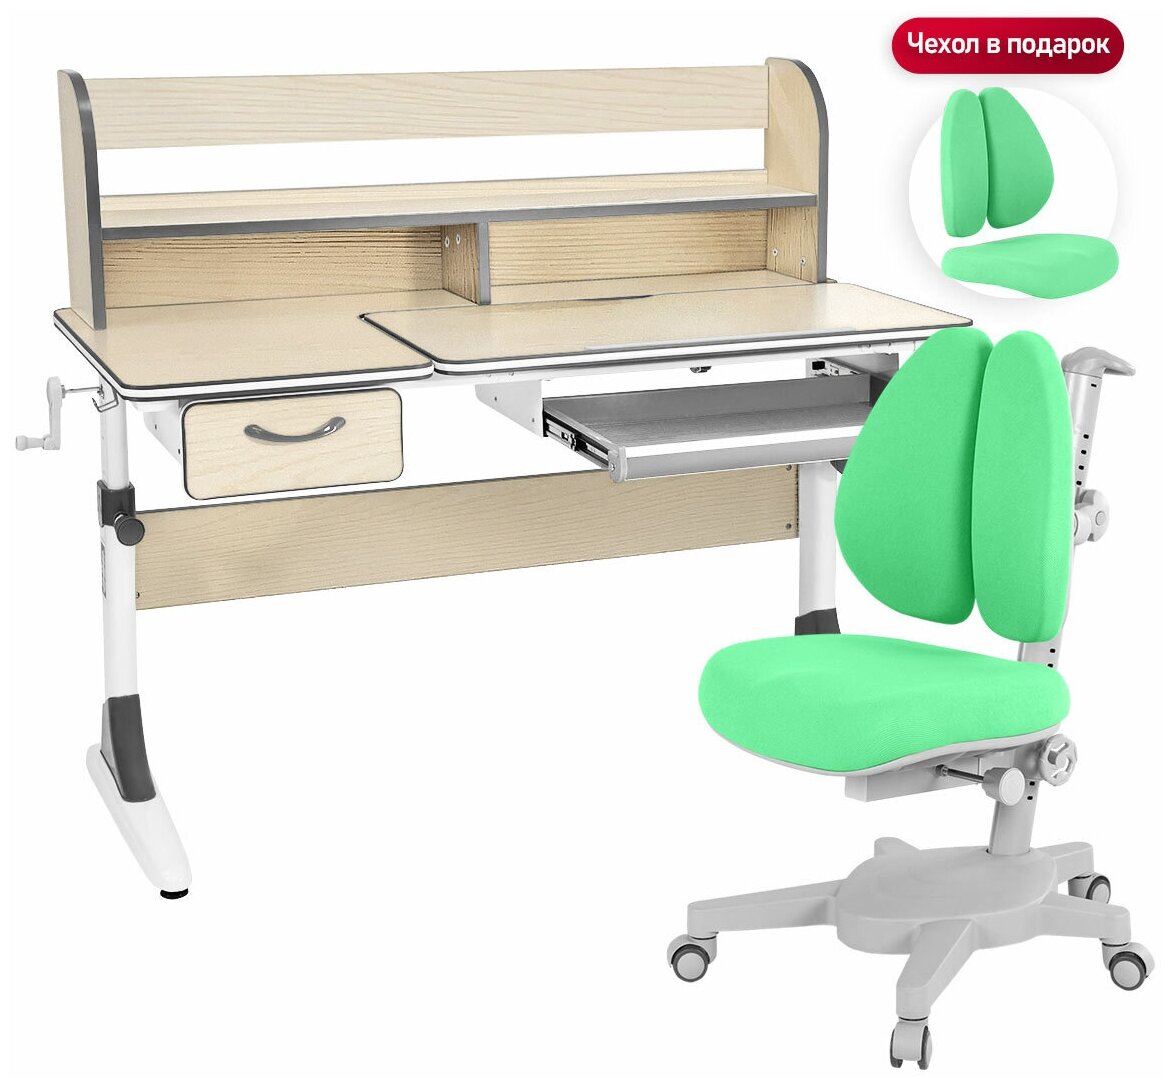 Комплект Anatomica Smart-60 Lux парта + кресло + надстройка + органайзер + ящик клен/серый с зеленым креслом Armata Duos - фотография № 5